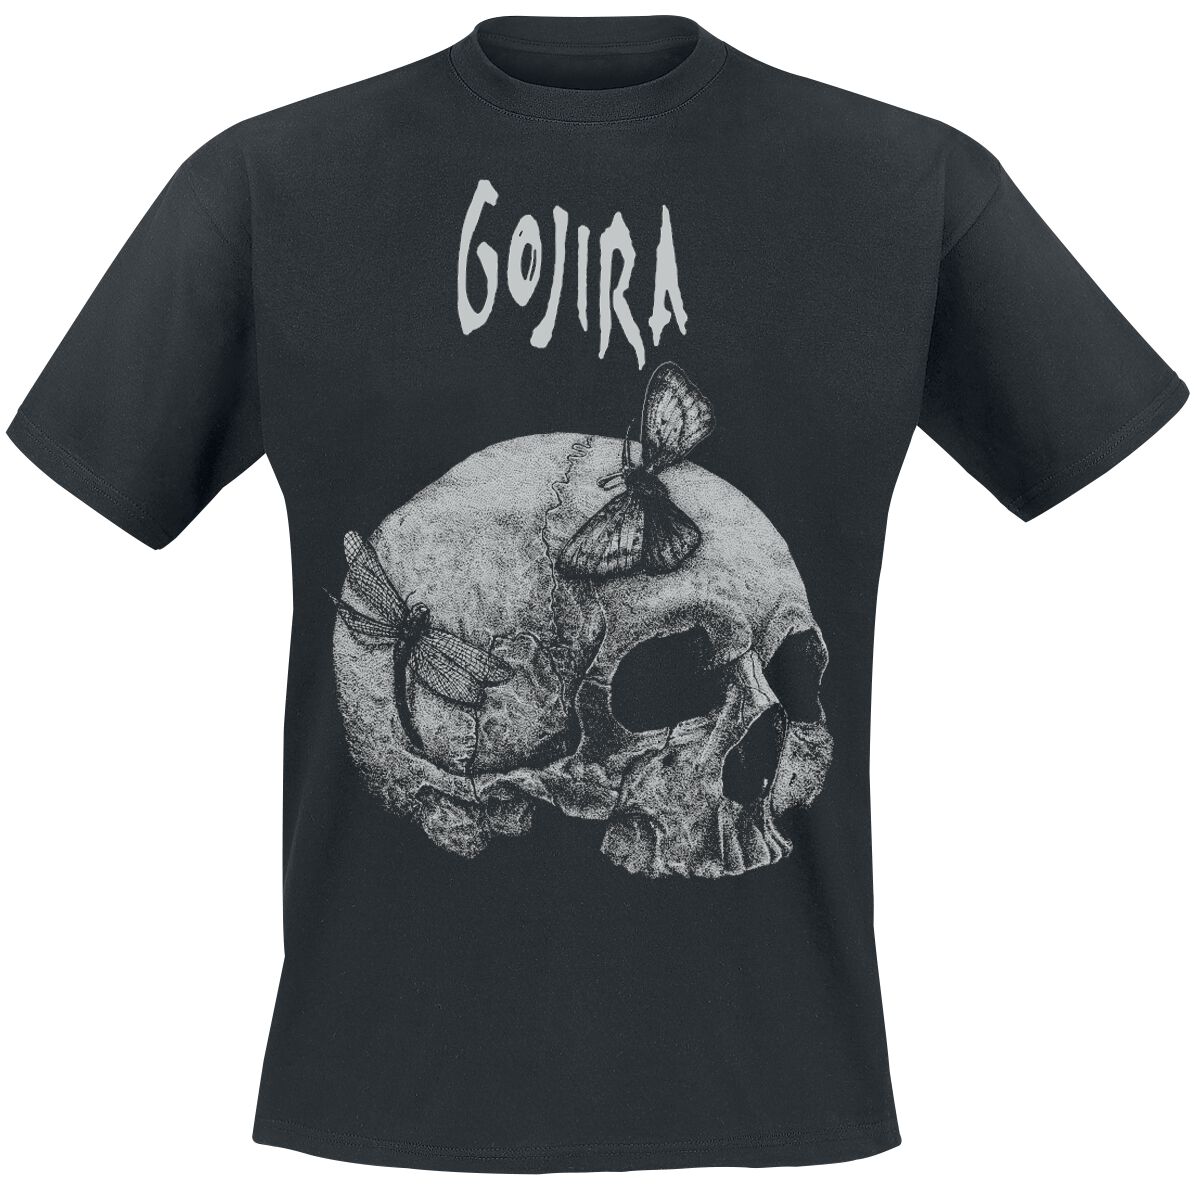 Gojira T-Shirt - Moth Skull - S bis XXL - für Männer - Größe S - schwarz  - Lizenziertes Merchandise!